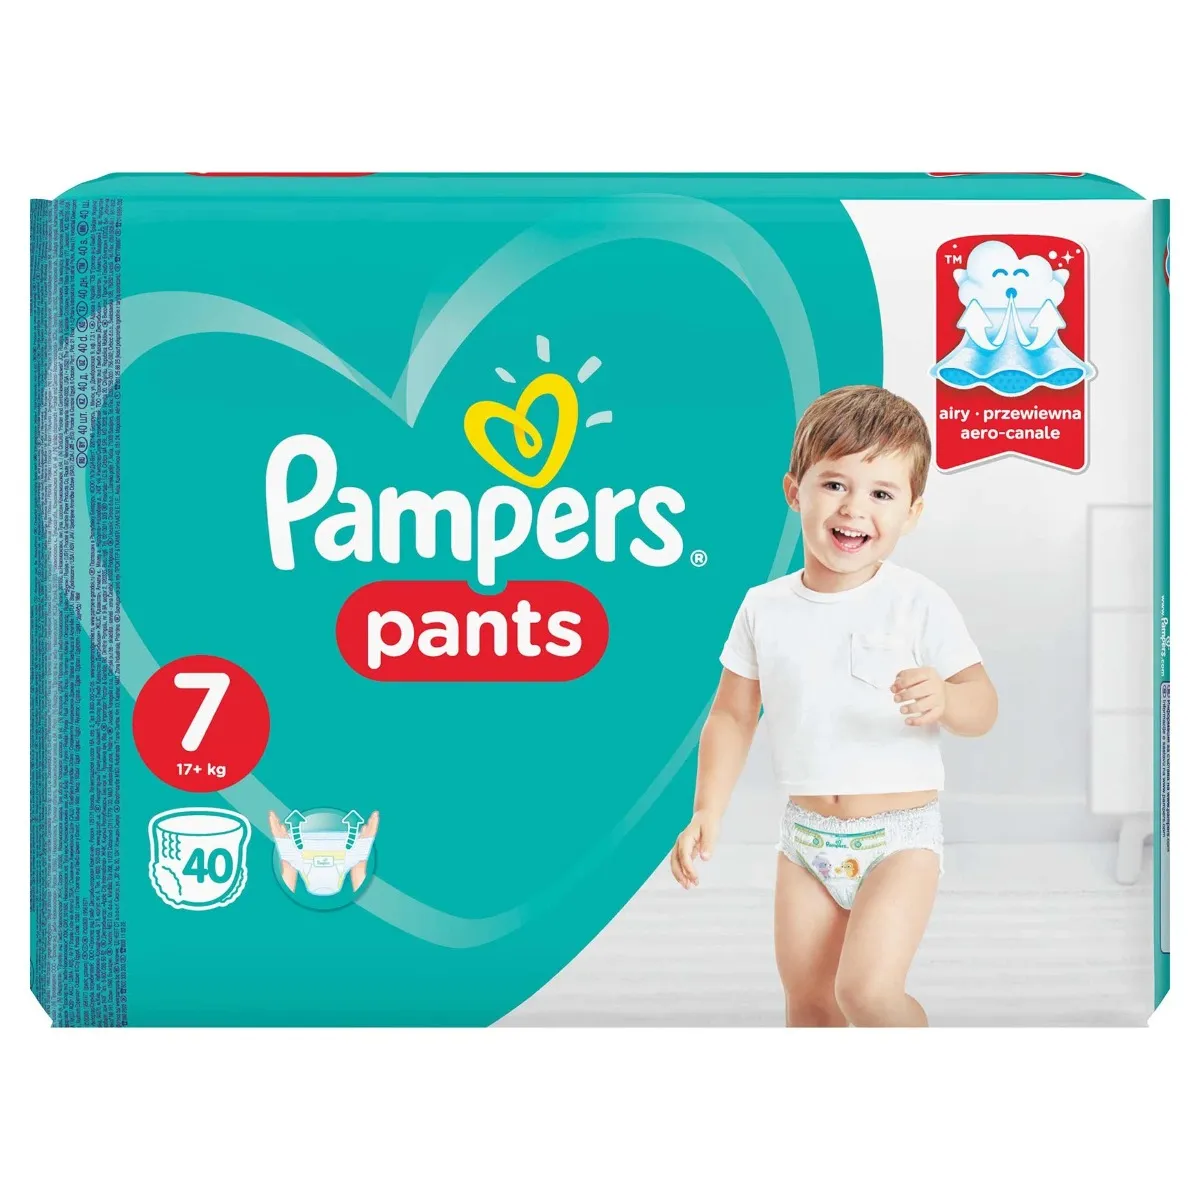 Scutece-chilotel Pants Jumbo Pack marimea 7 pentru 17+ kg, 40 bucati, Pampers